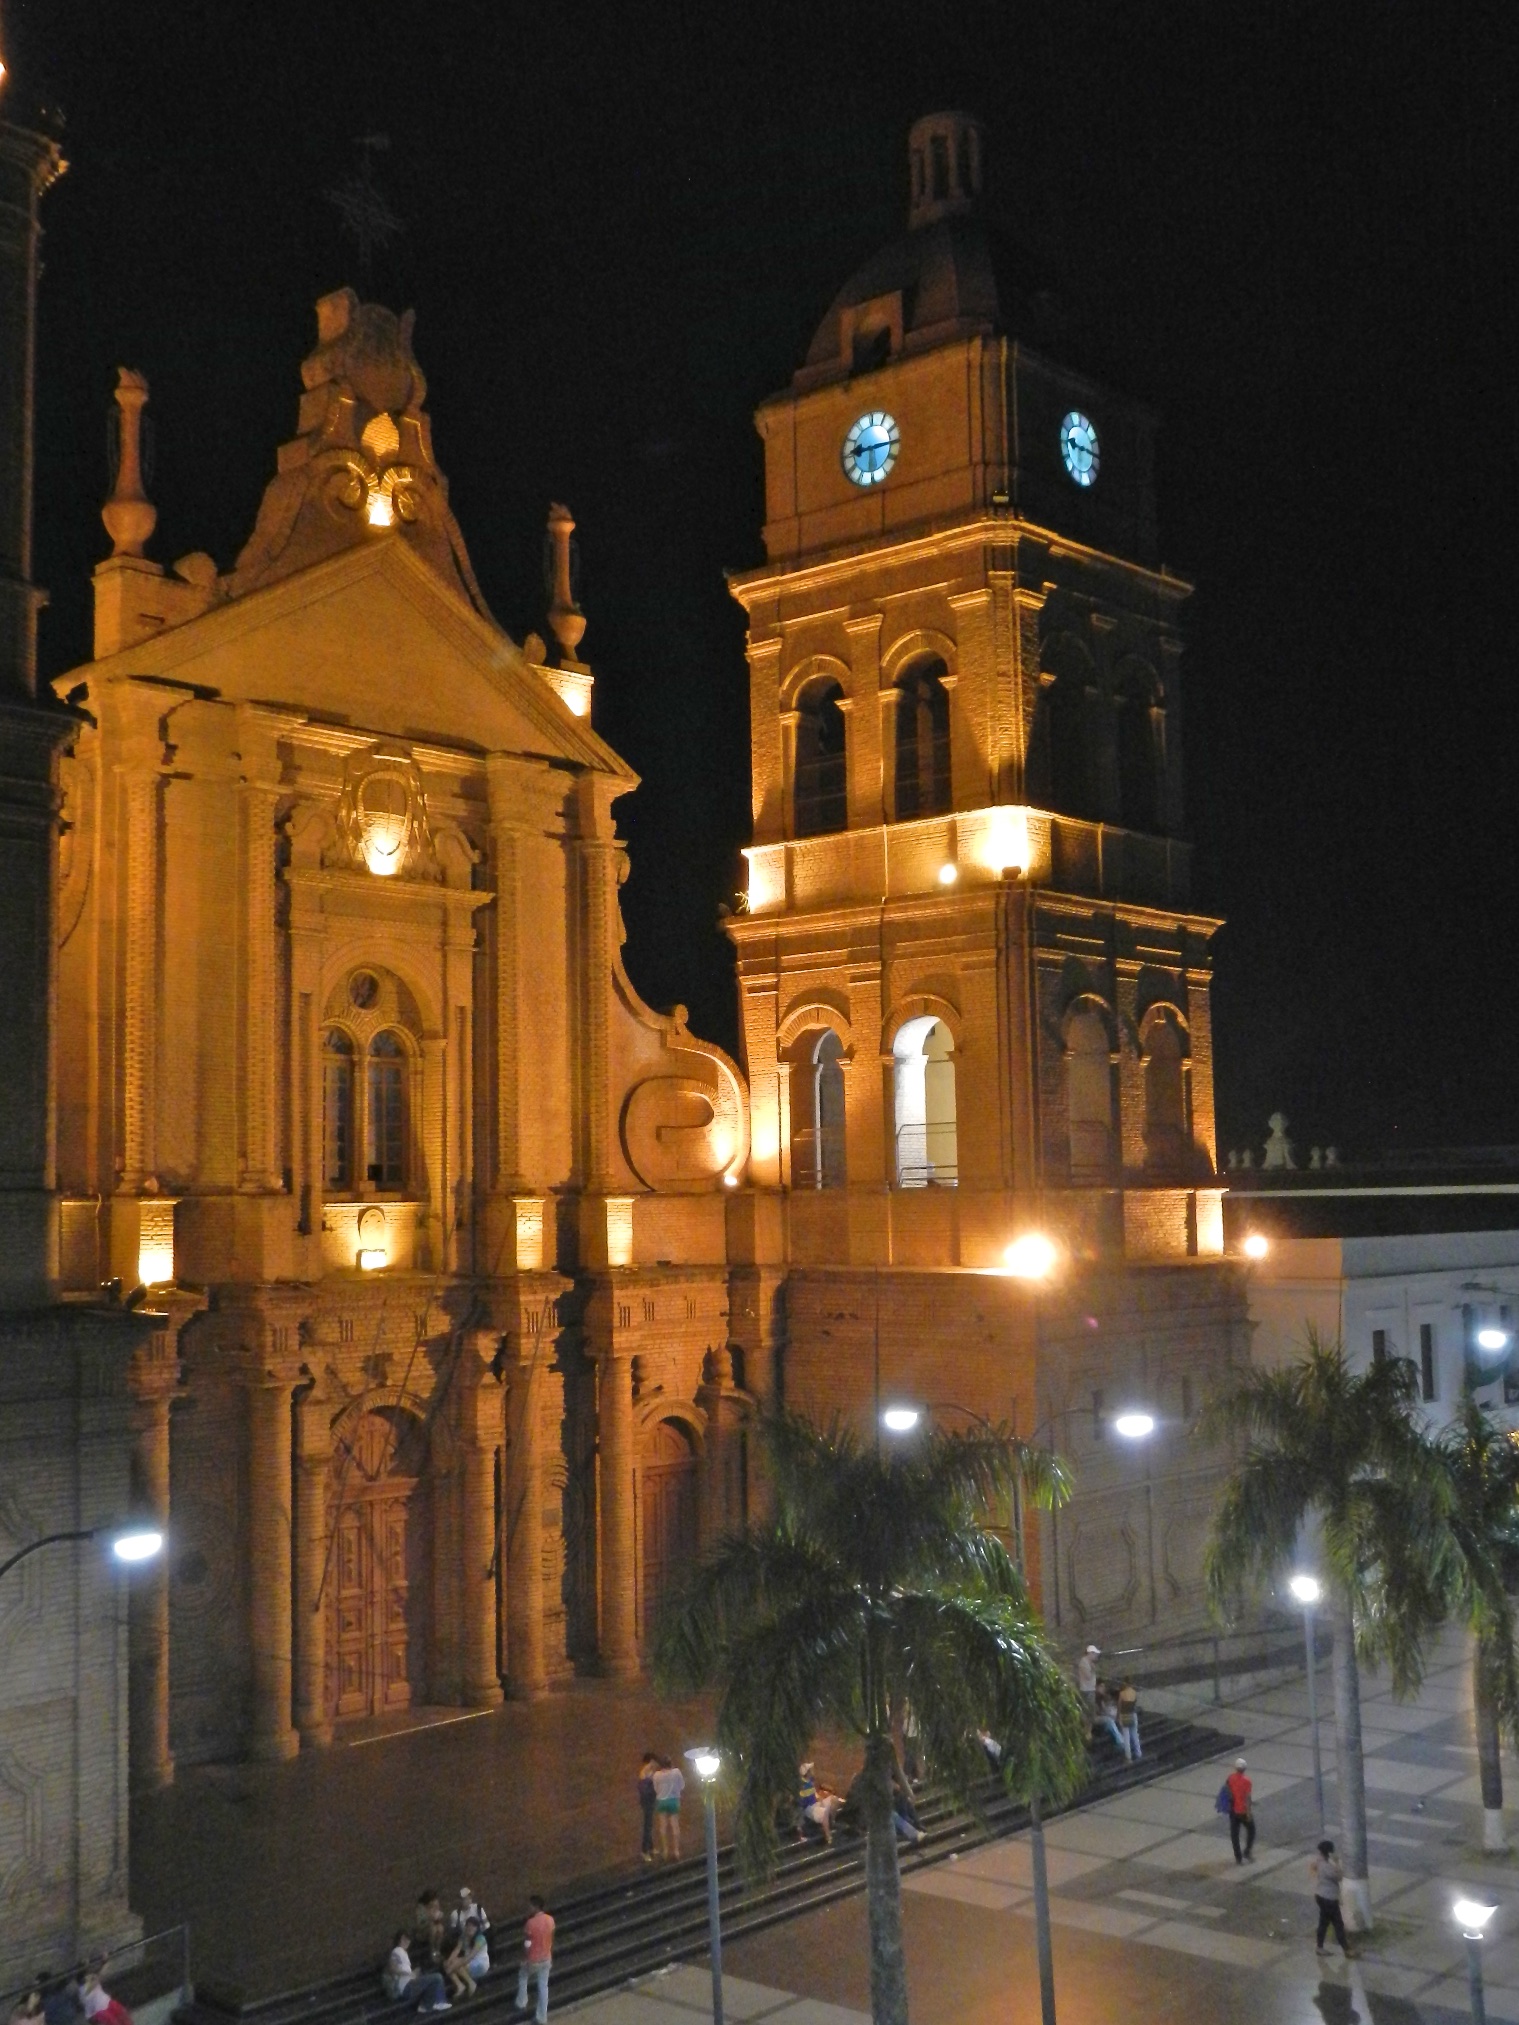  Cathedral at night, Santa Cruz, Bolivia 